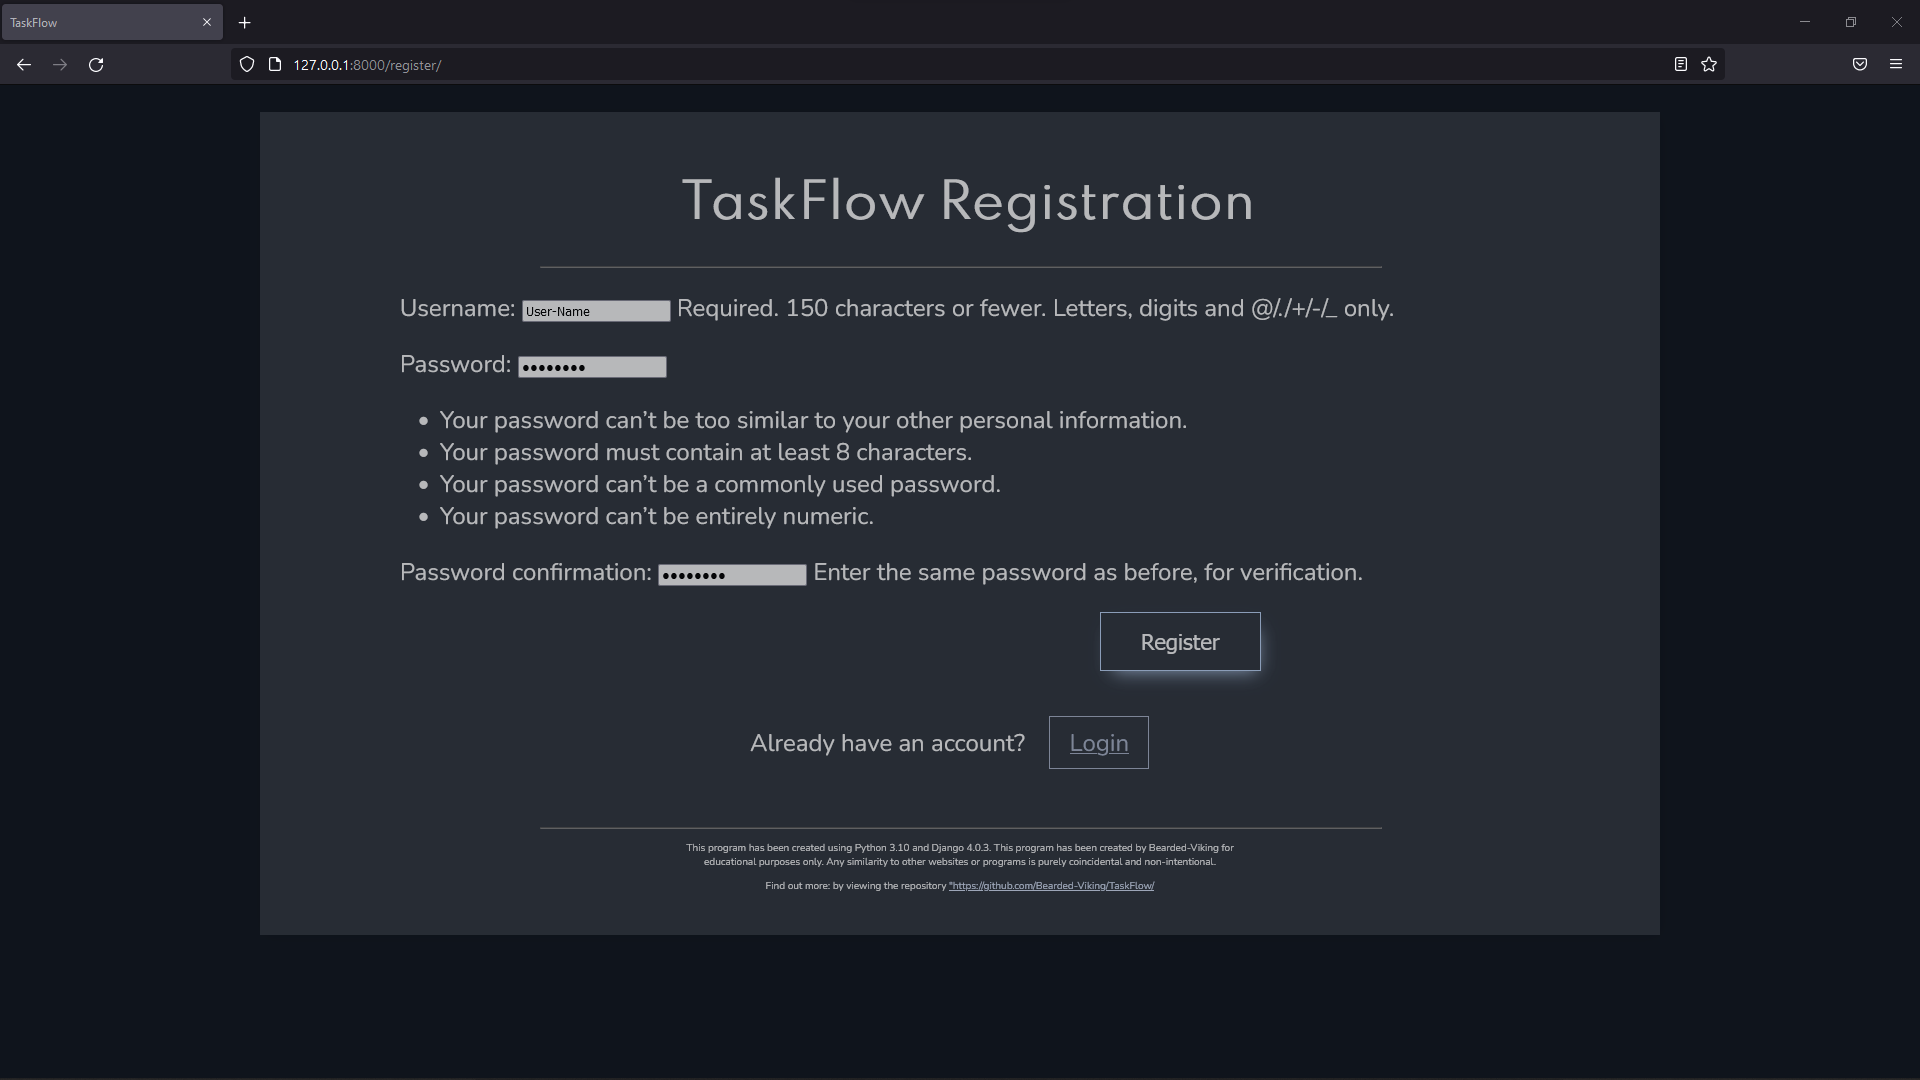 TaskFlow Registration